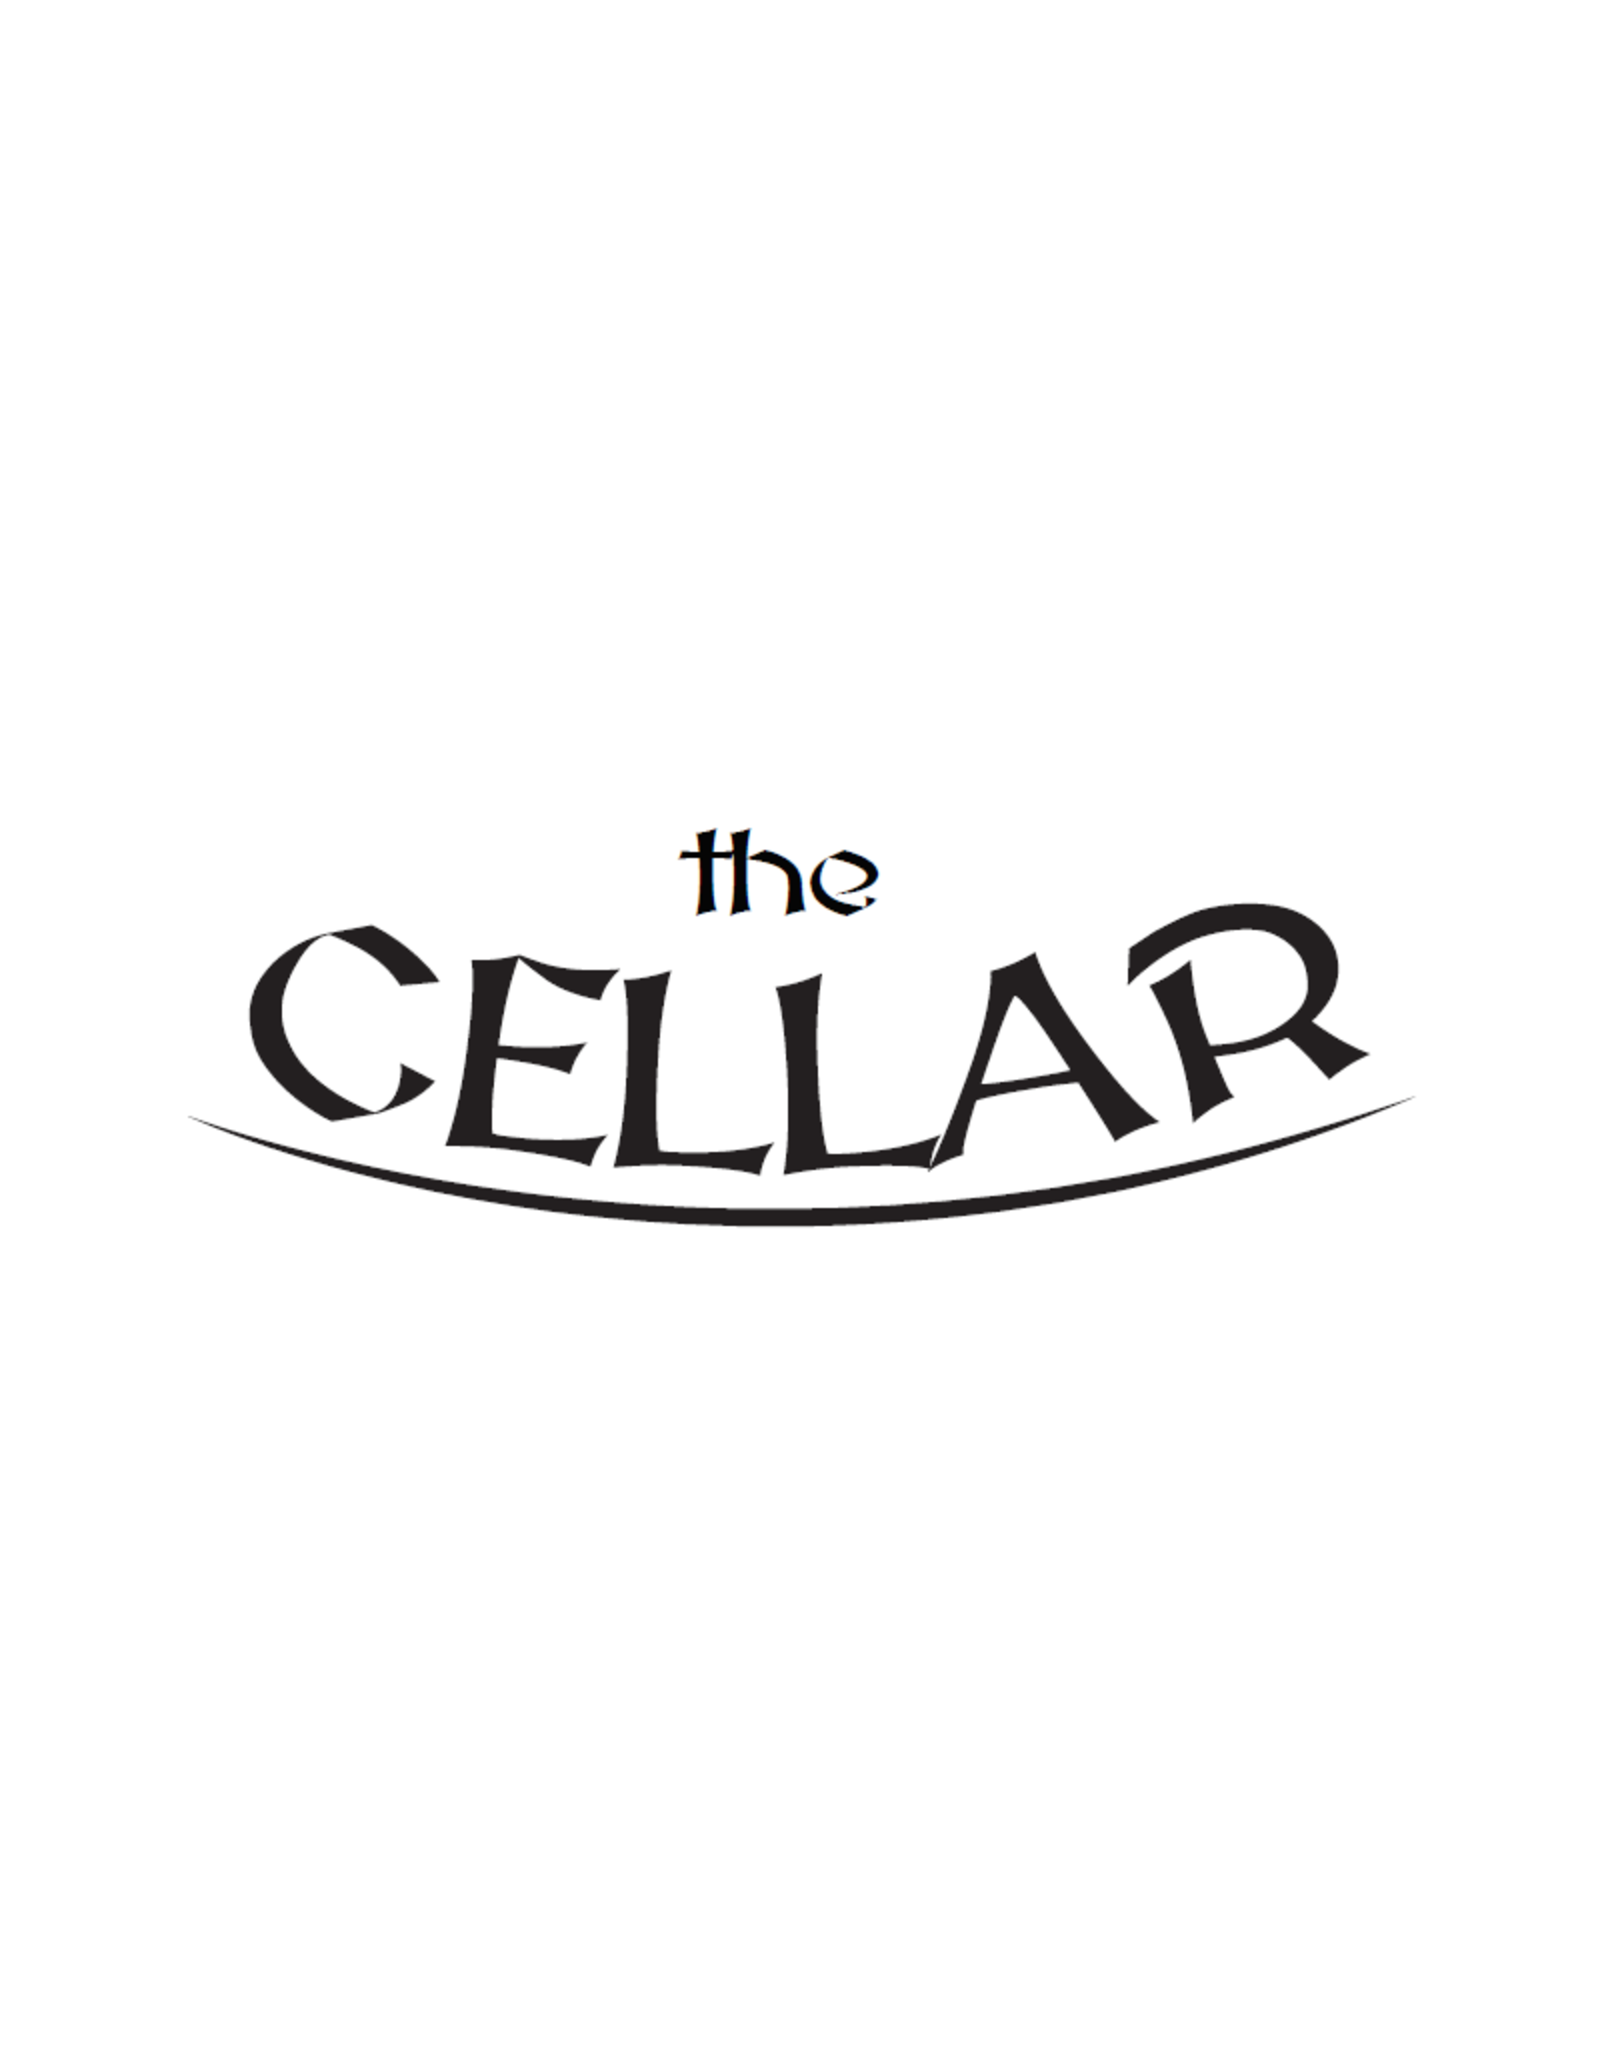 The Cellar Cream Ale Cellar Extract